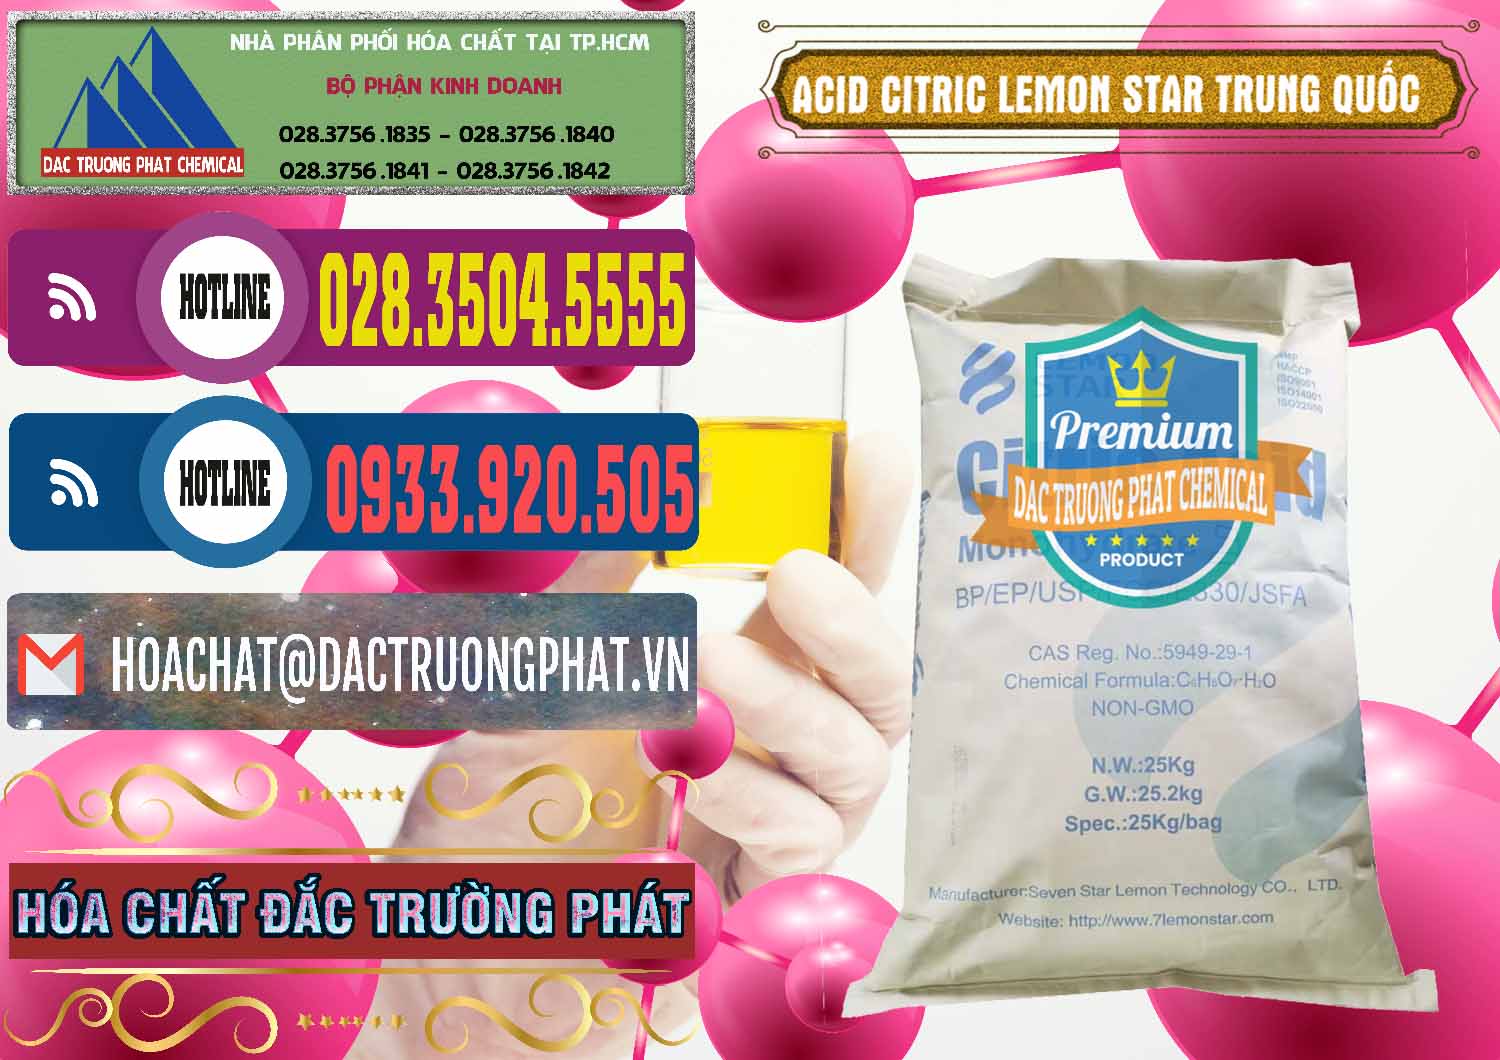 Cty chuyên nhập khẩu _ bán Acid Citric - Axit Citric BP/EP/USP/FCC/E330 Lemon Star Trung Quốc China - 0286 - Cty chuyên nhập khẩu & cung cấp hóa chất tại TP.HCM - muabanhoachat.com.vn